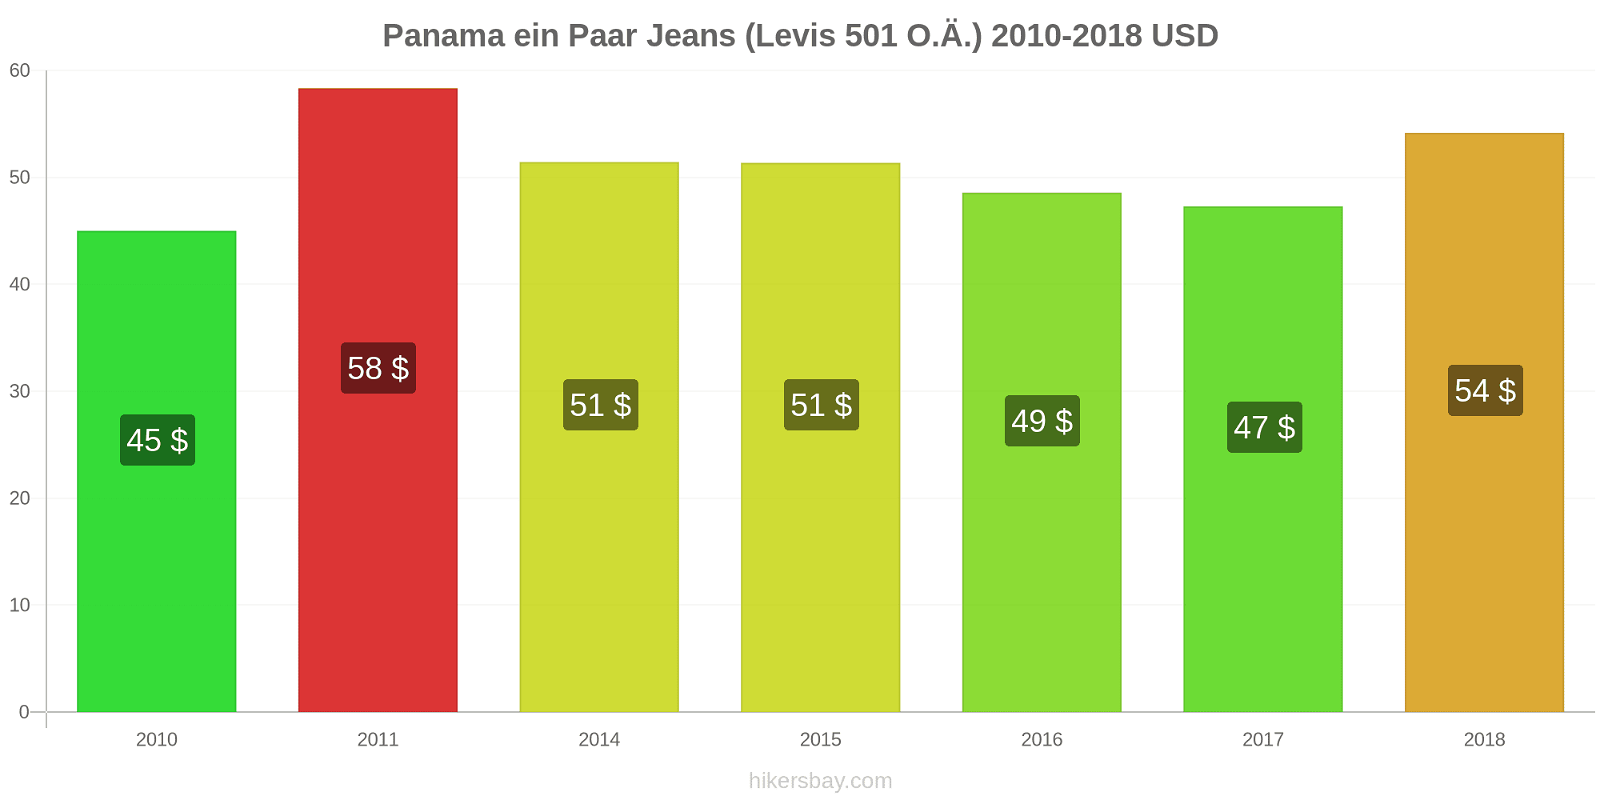 Panama Preisänderungen 1 Paar Jeans (Levis 501 oder ähnlich) hikersbay.com